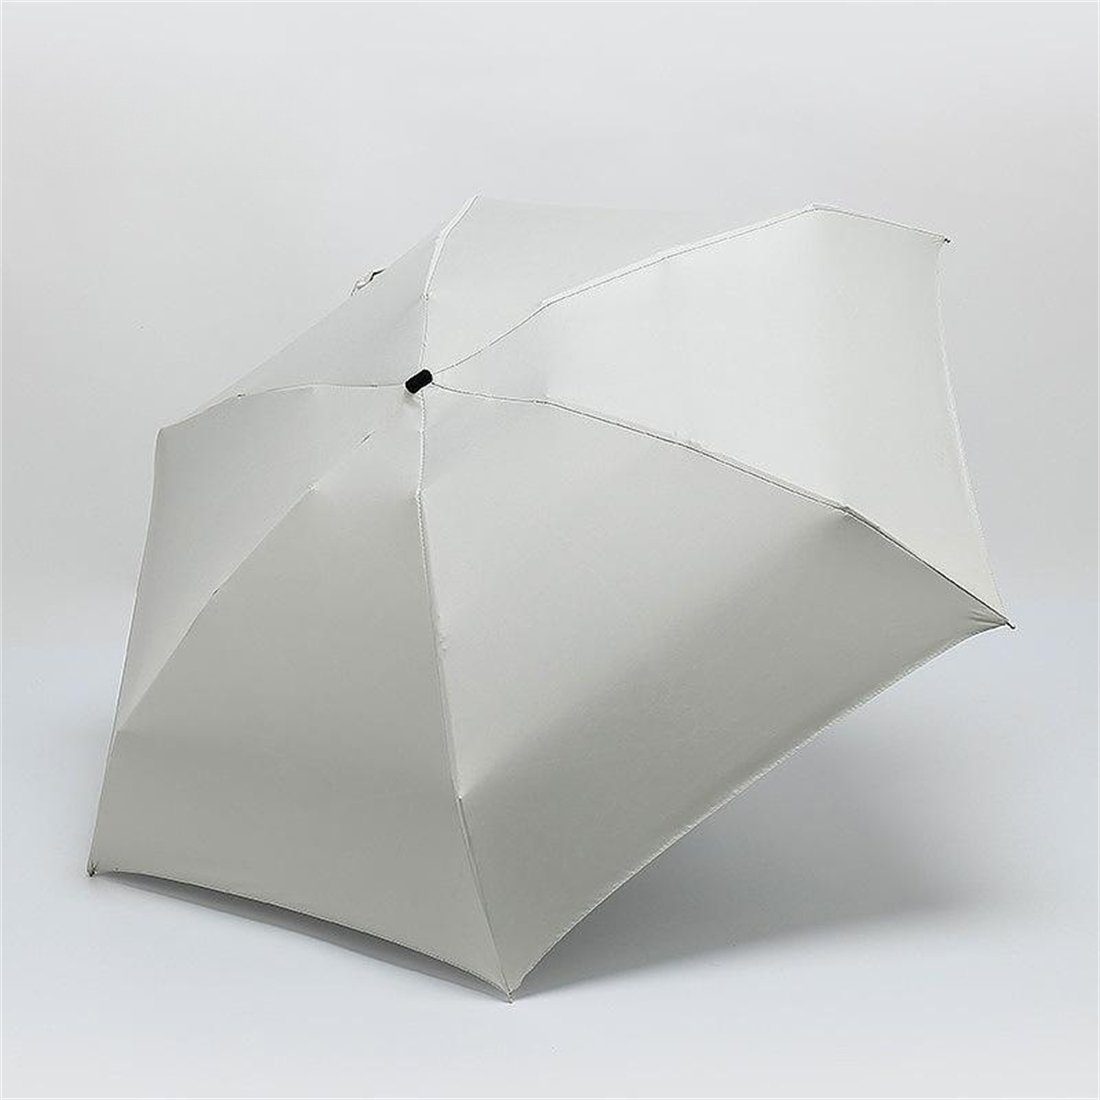 small für Regen Taschenschirme UV-Schutz schützt Taschenregenschirm manual winzig Beige vor YOOdy~ und damen Sonne Sonnenschutz, unterwegs für klein sonnenschirm